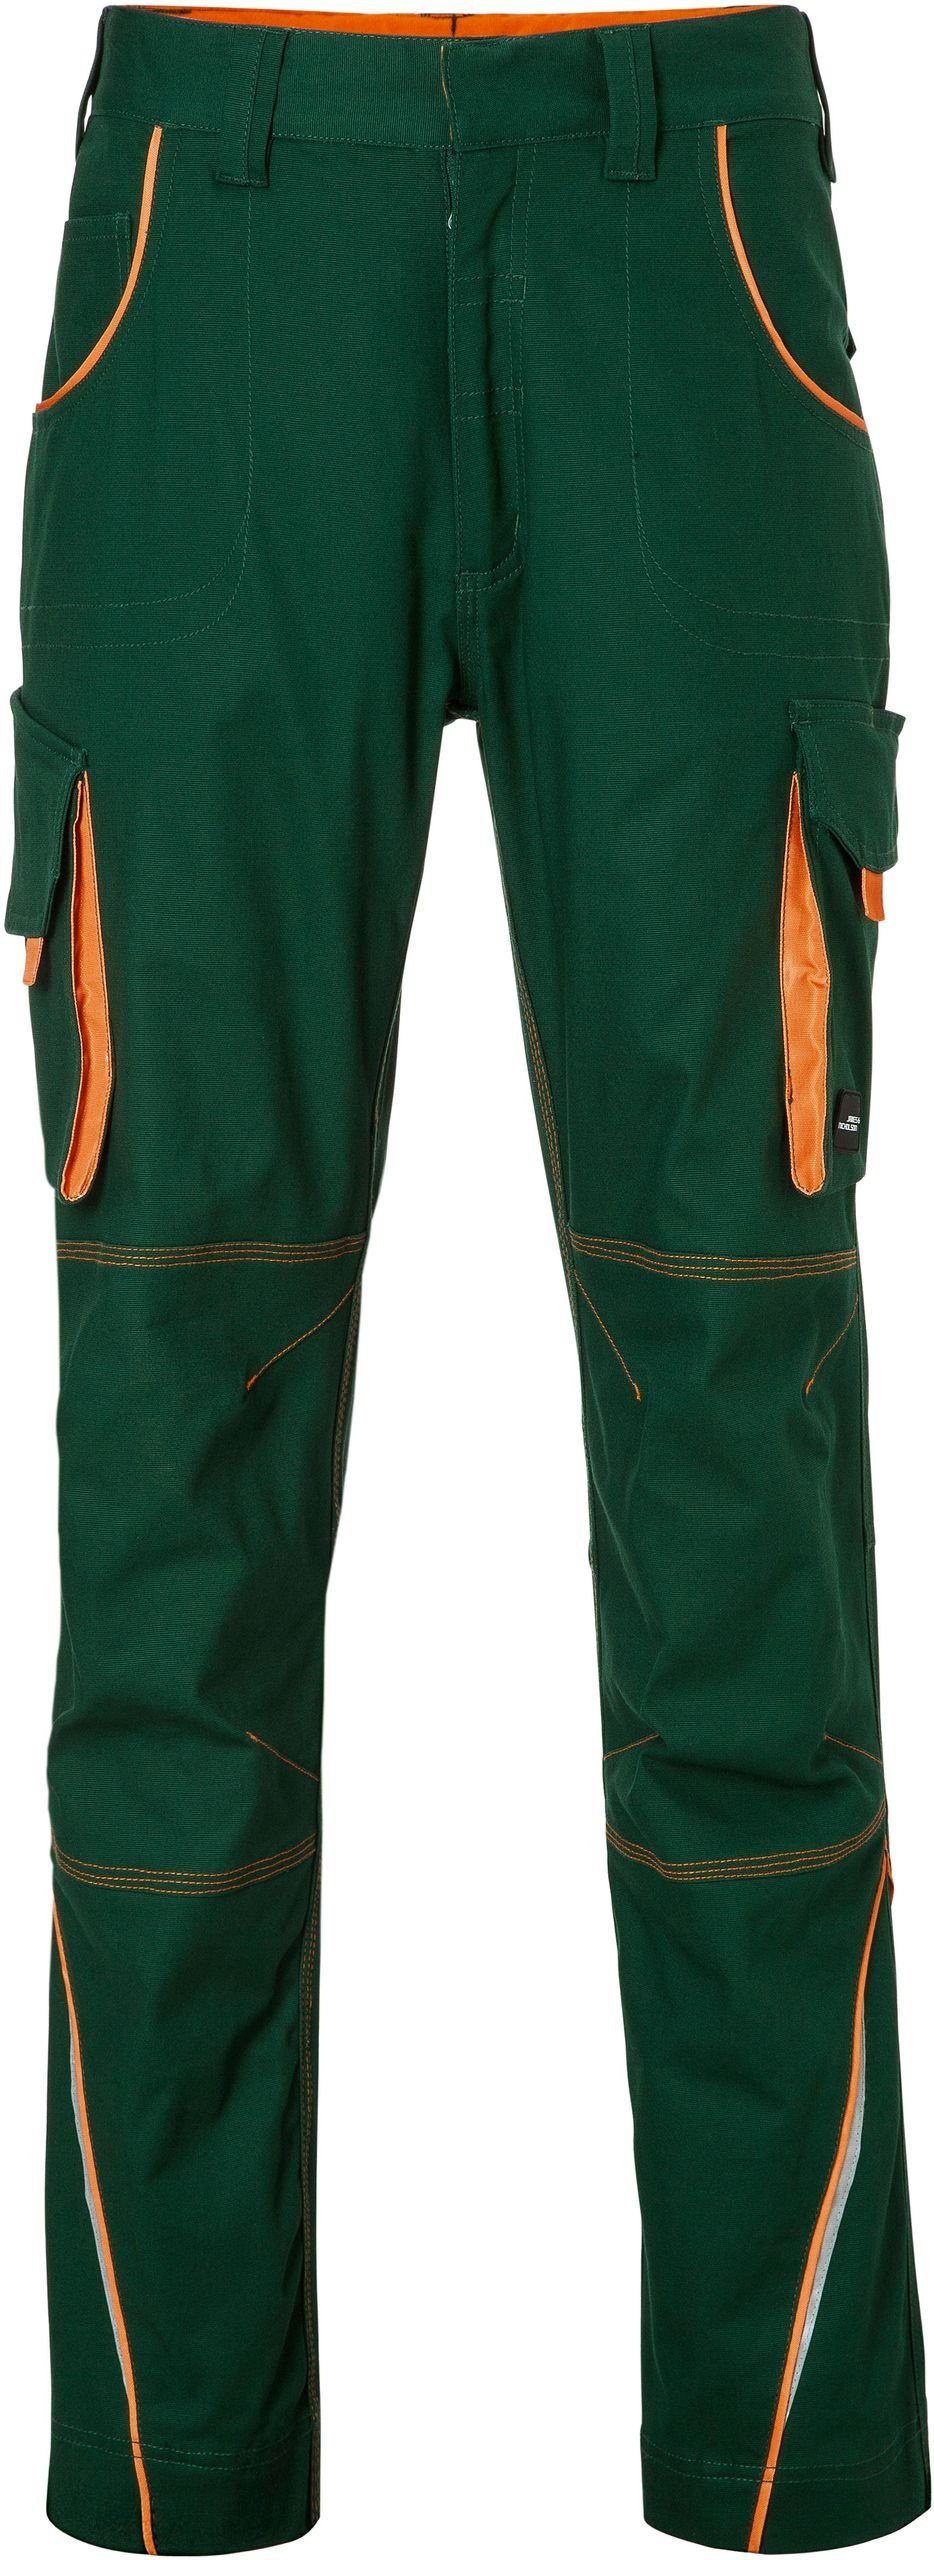 James & Nicholson Arbeitshose Workwear Hose FaS50847 dark green/orange